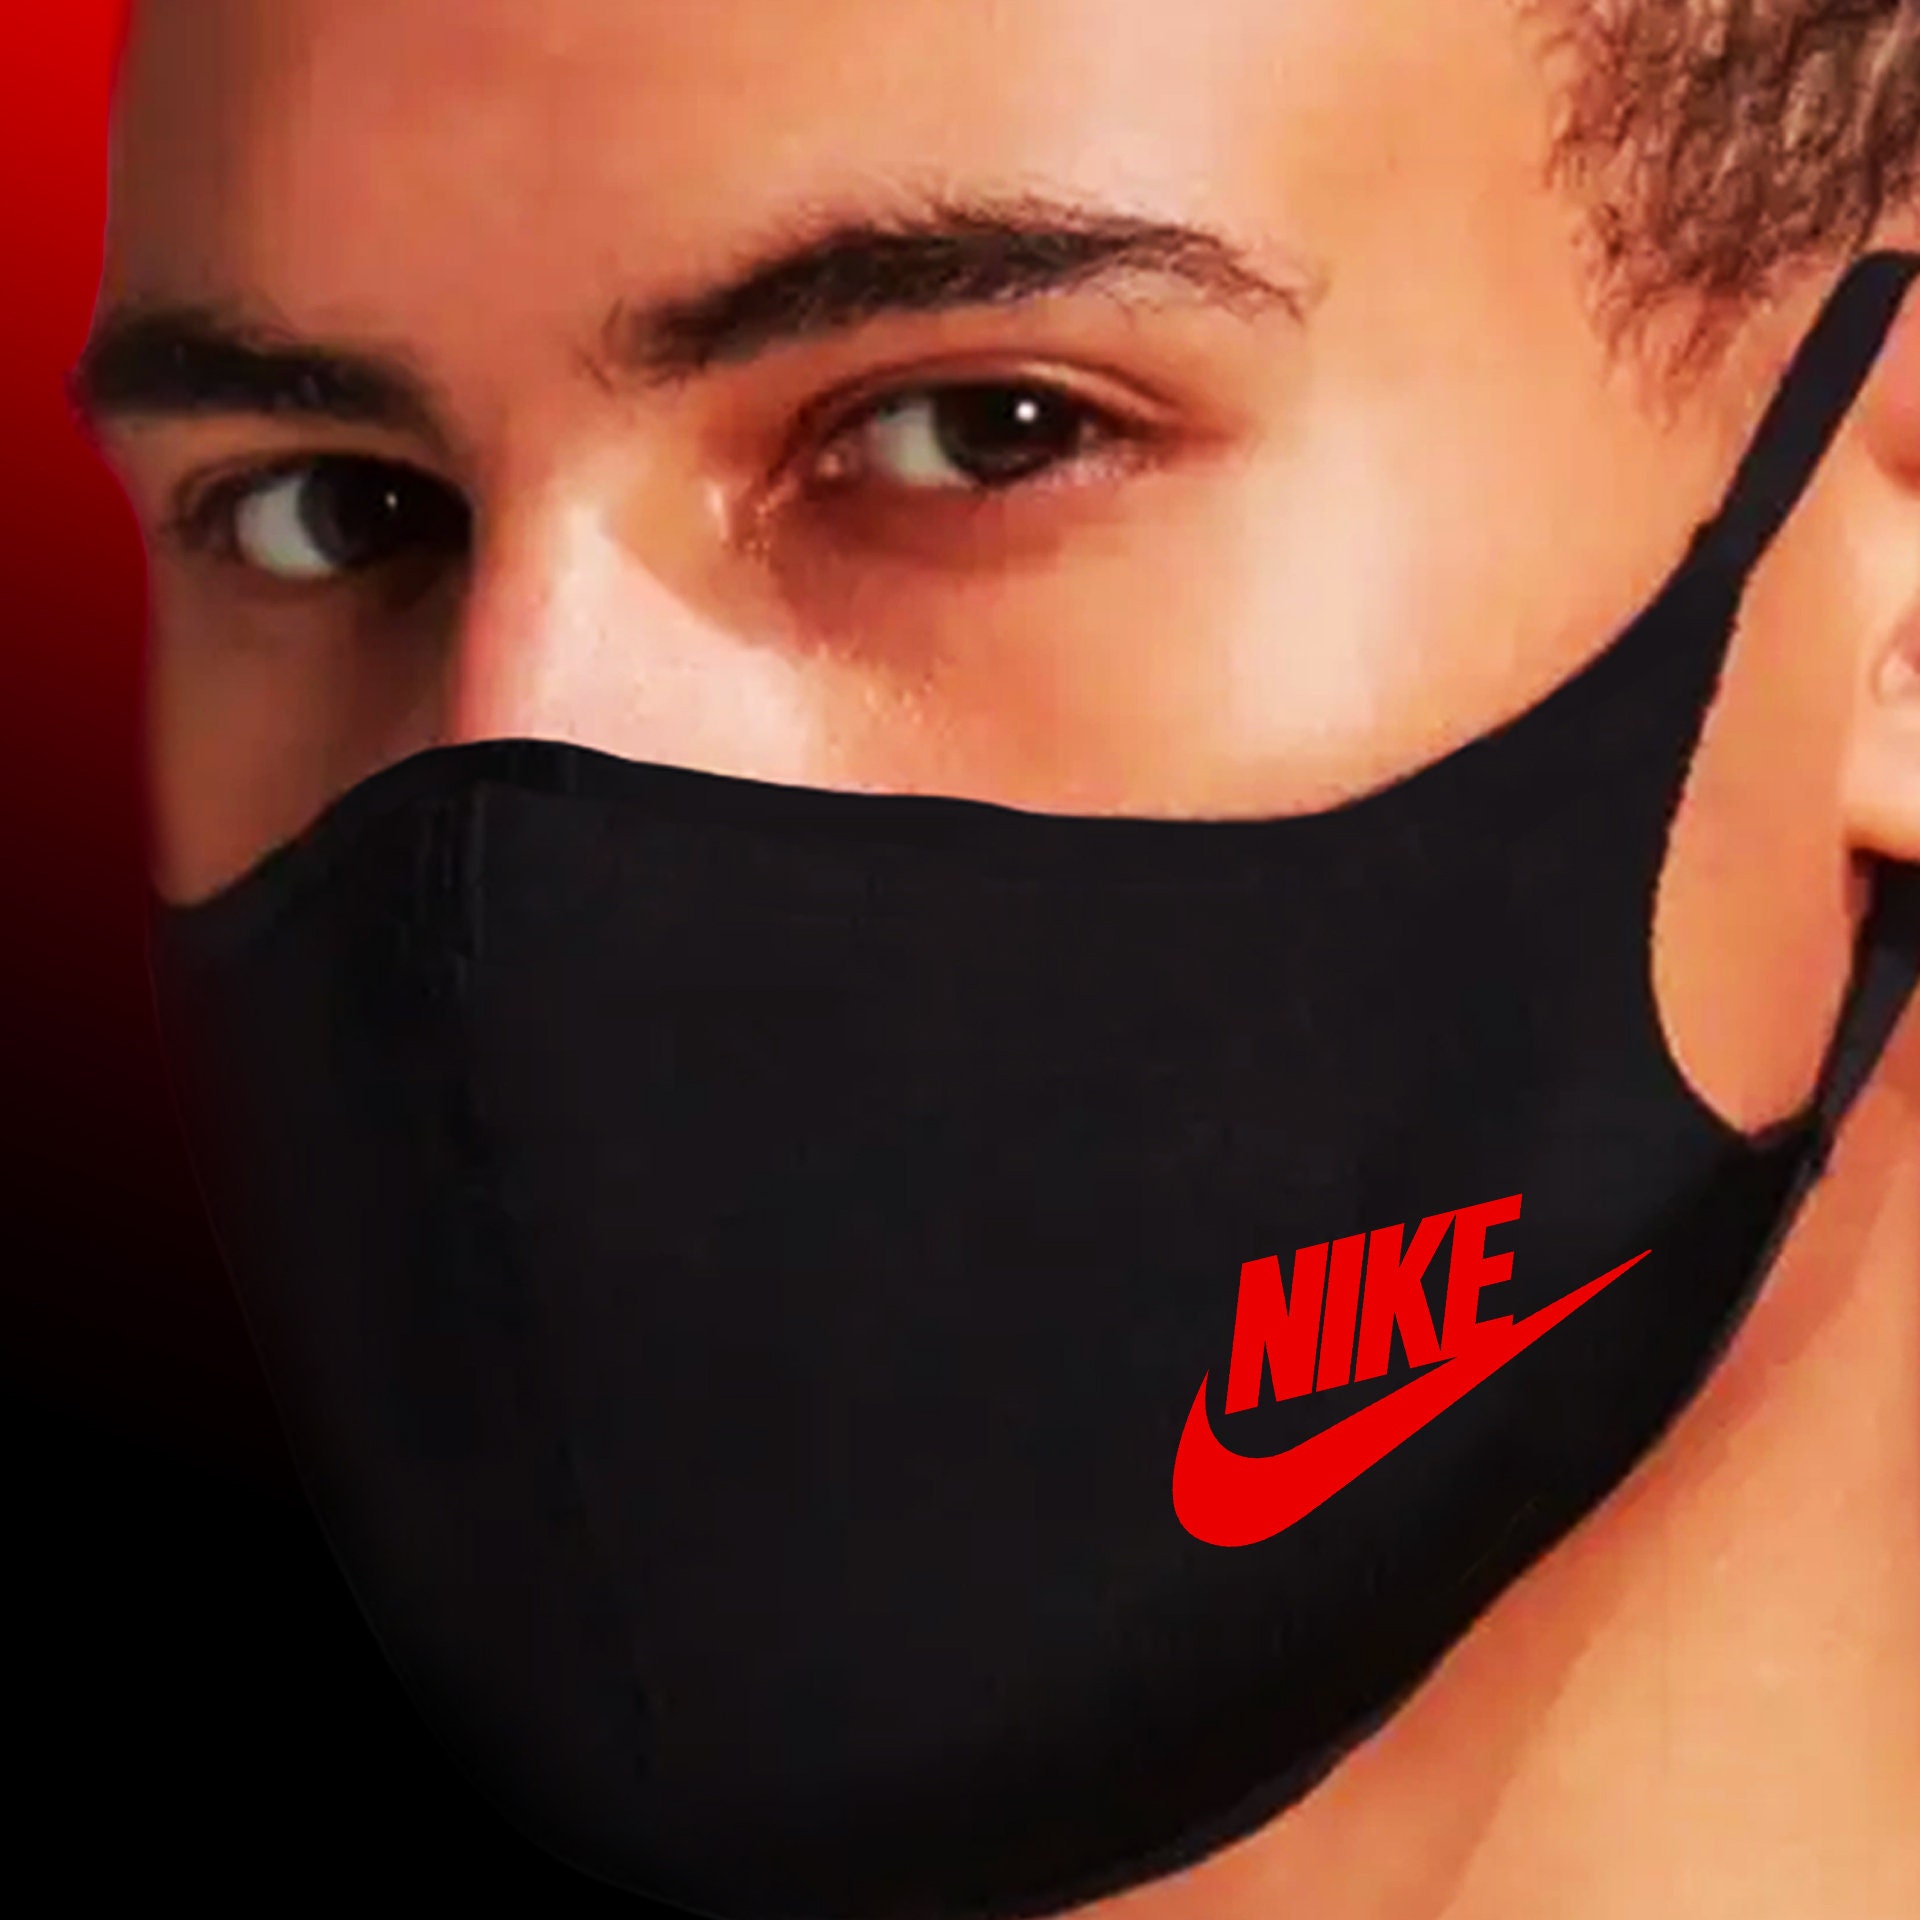 Nike Mask NikeFace Mask Face Cover Stretchable Washable | Etsy